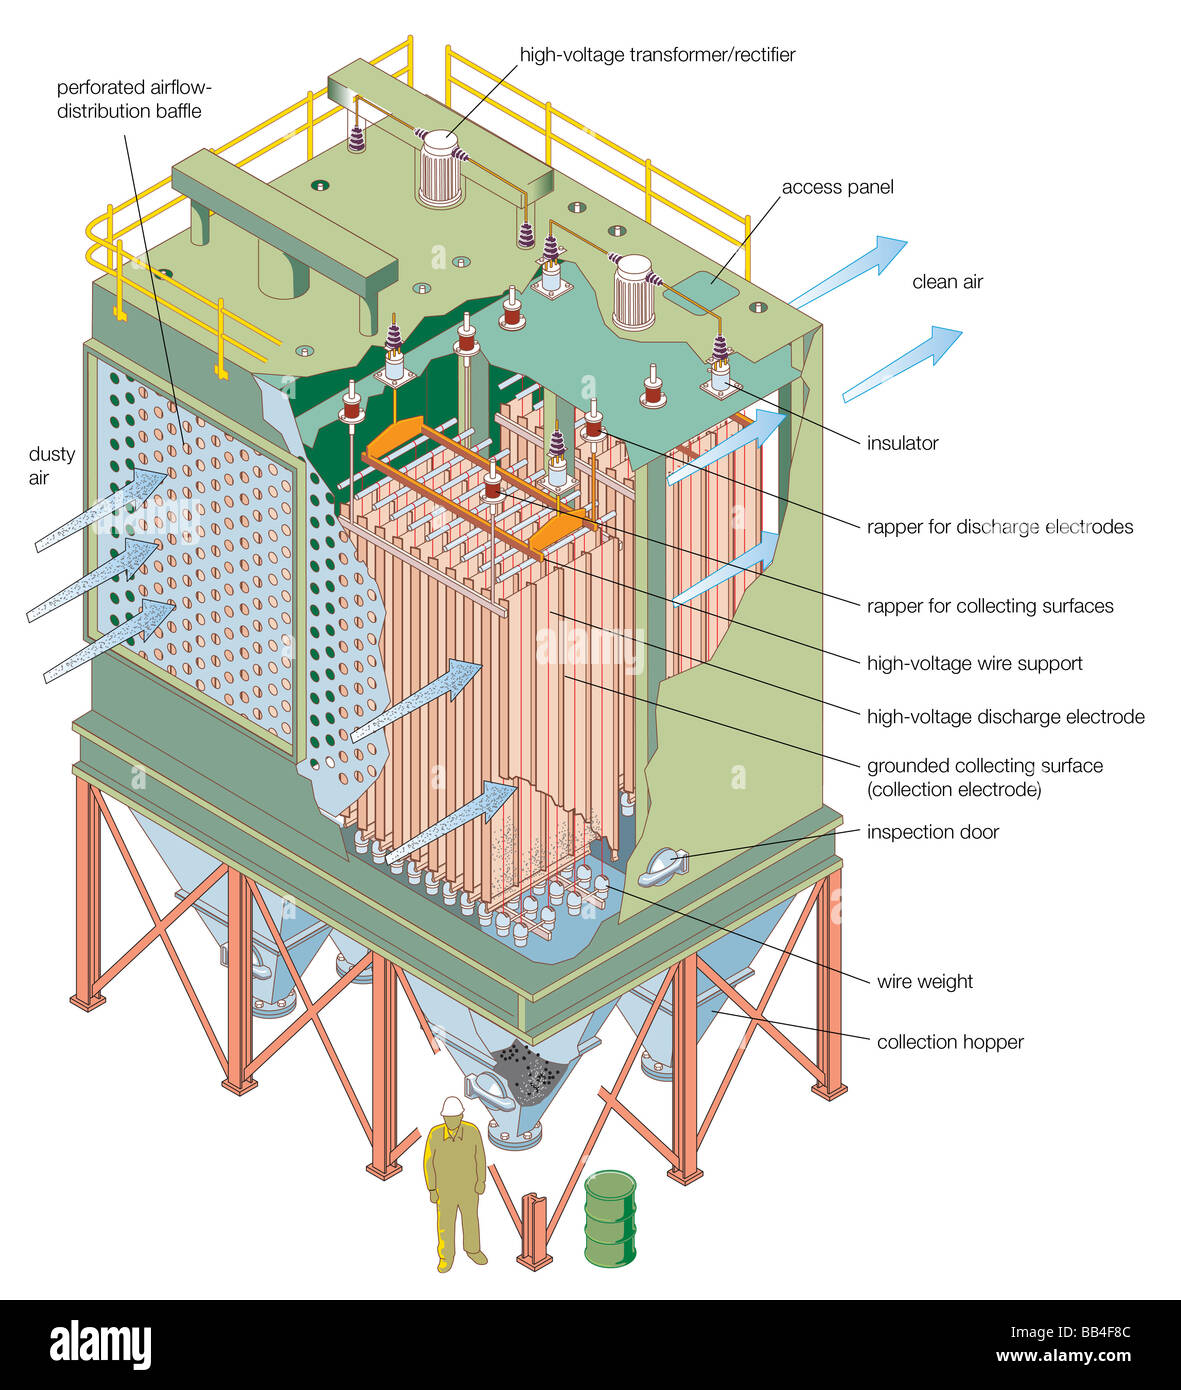 Elektrofilter, eine gemeinsame Partikel Sammelvorrichtung an fossiler Stromerzeugung Stationen. Stockfoto